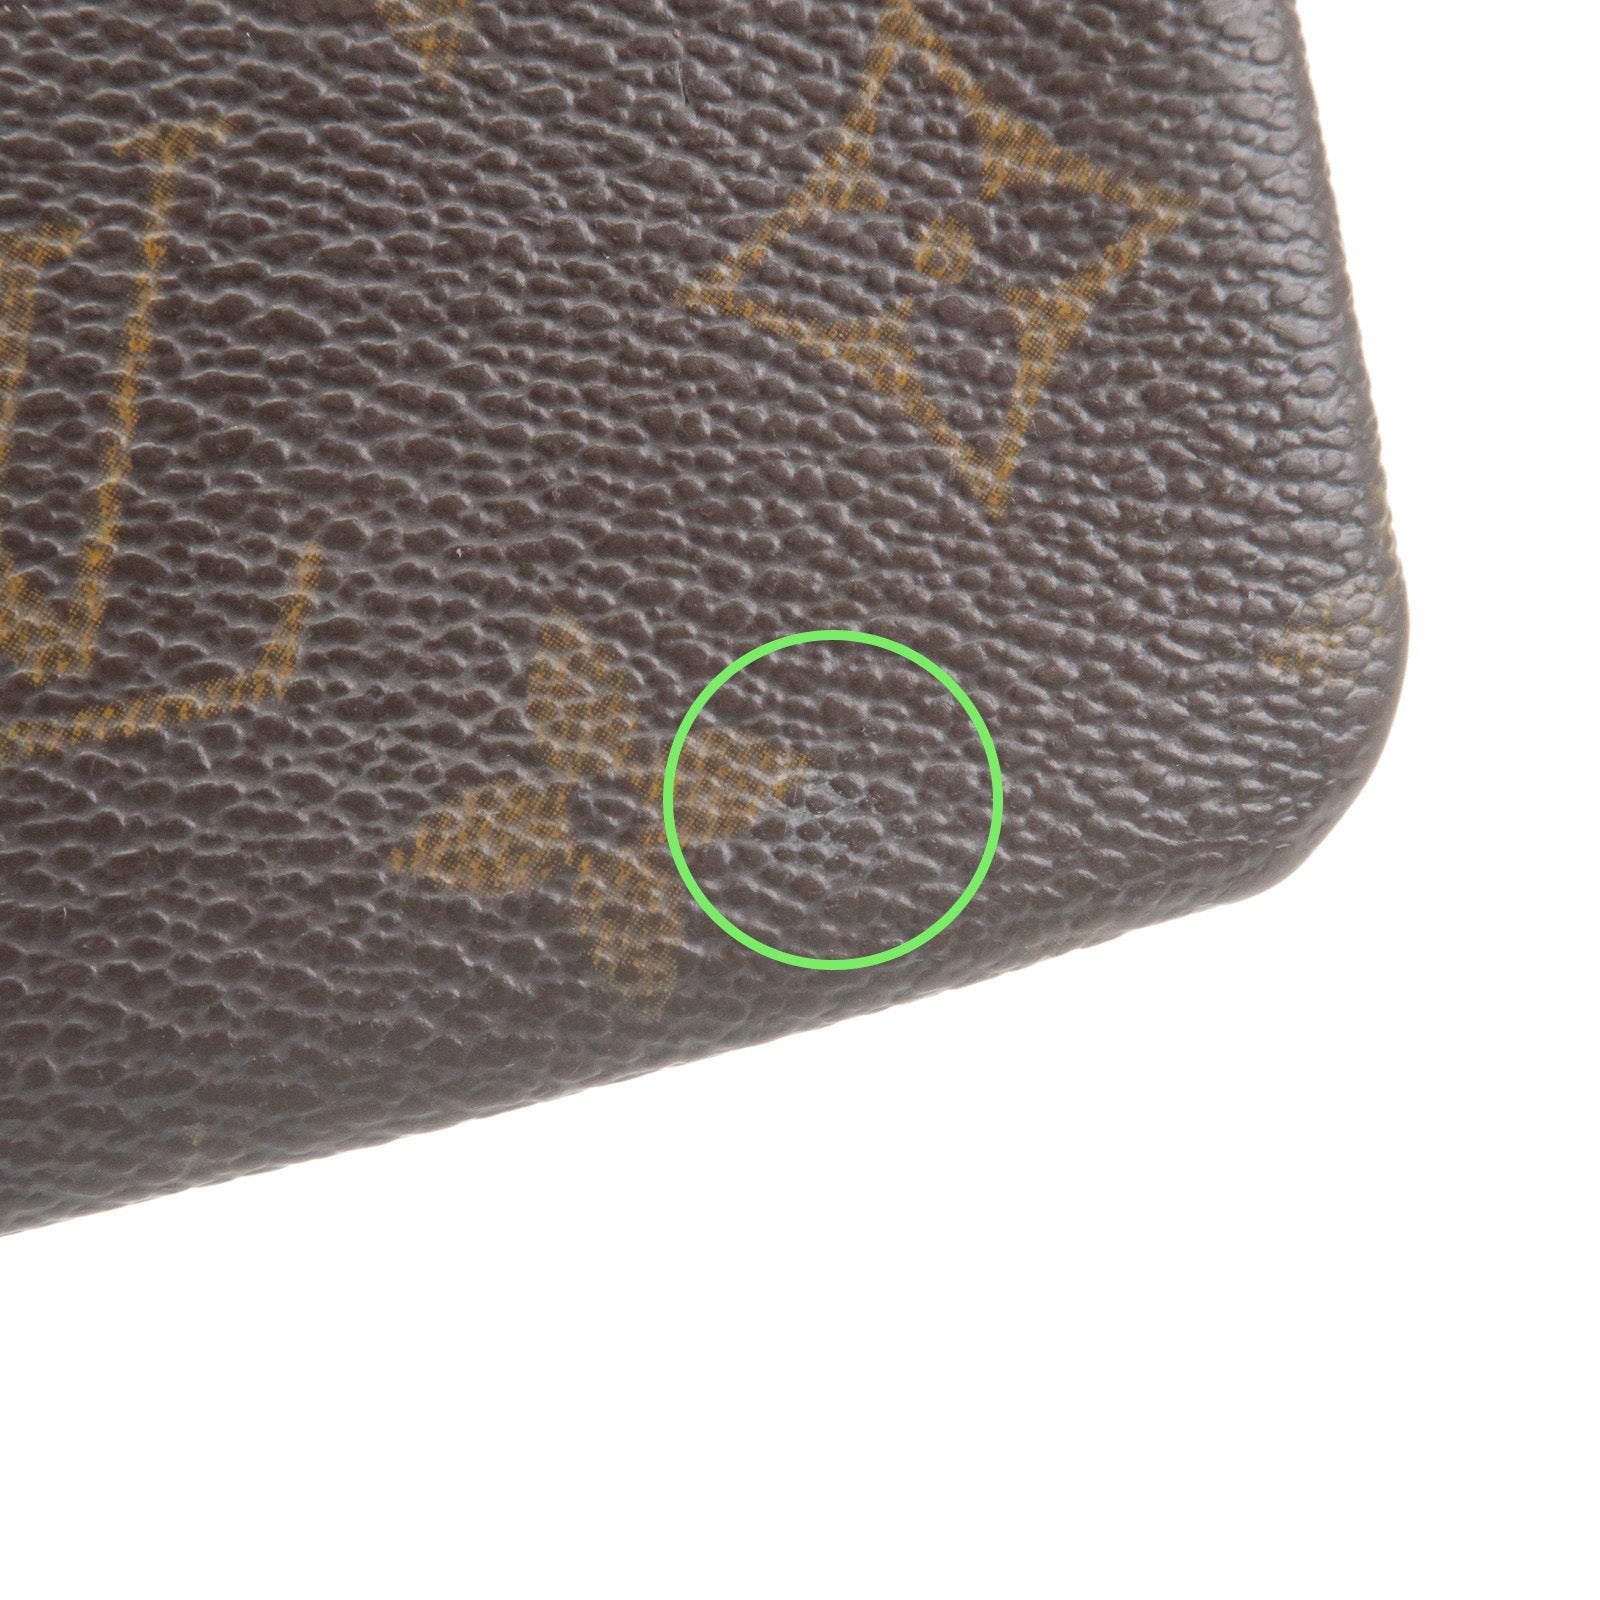 Set-of-2-Louis-Vuitton-Monogram-Coin-Case-M62650-M61970 – dct